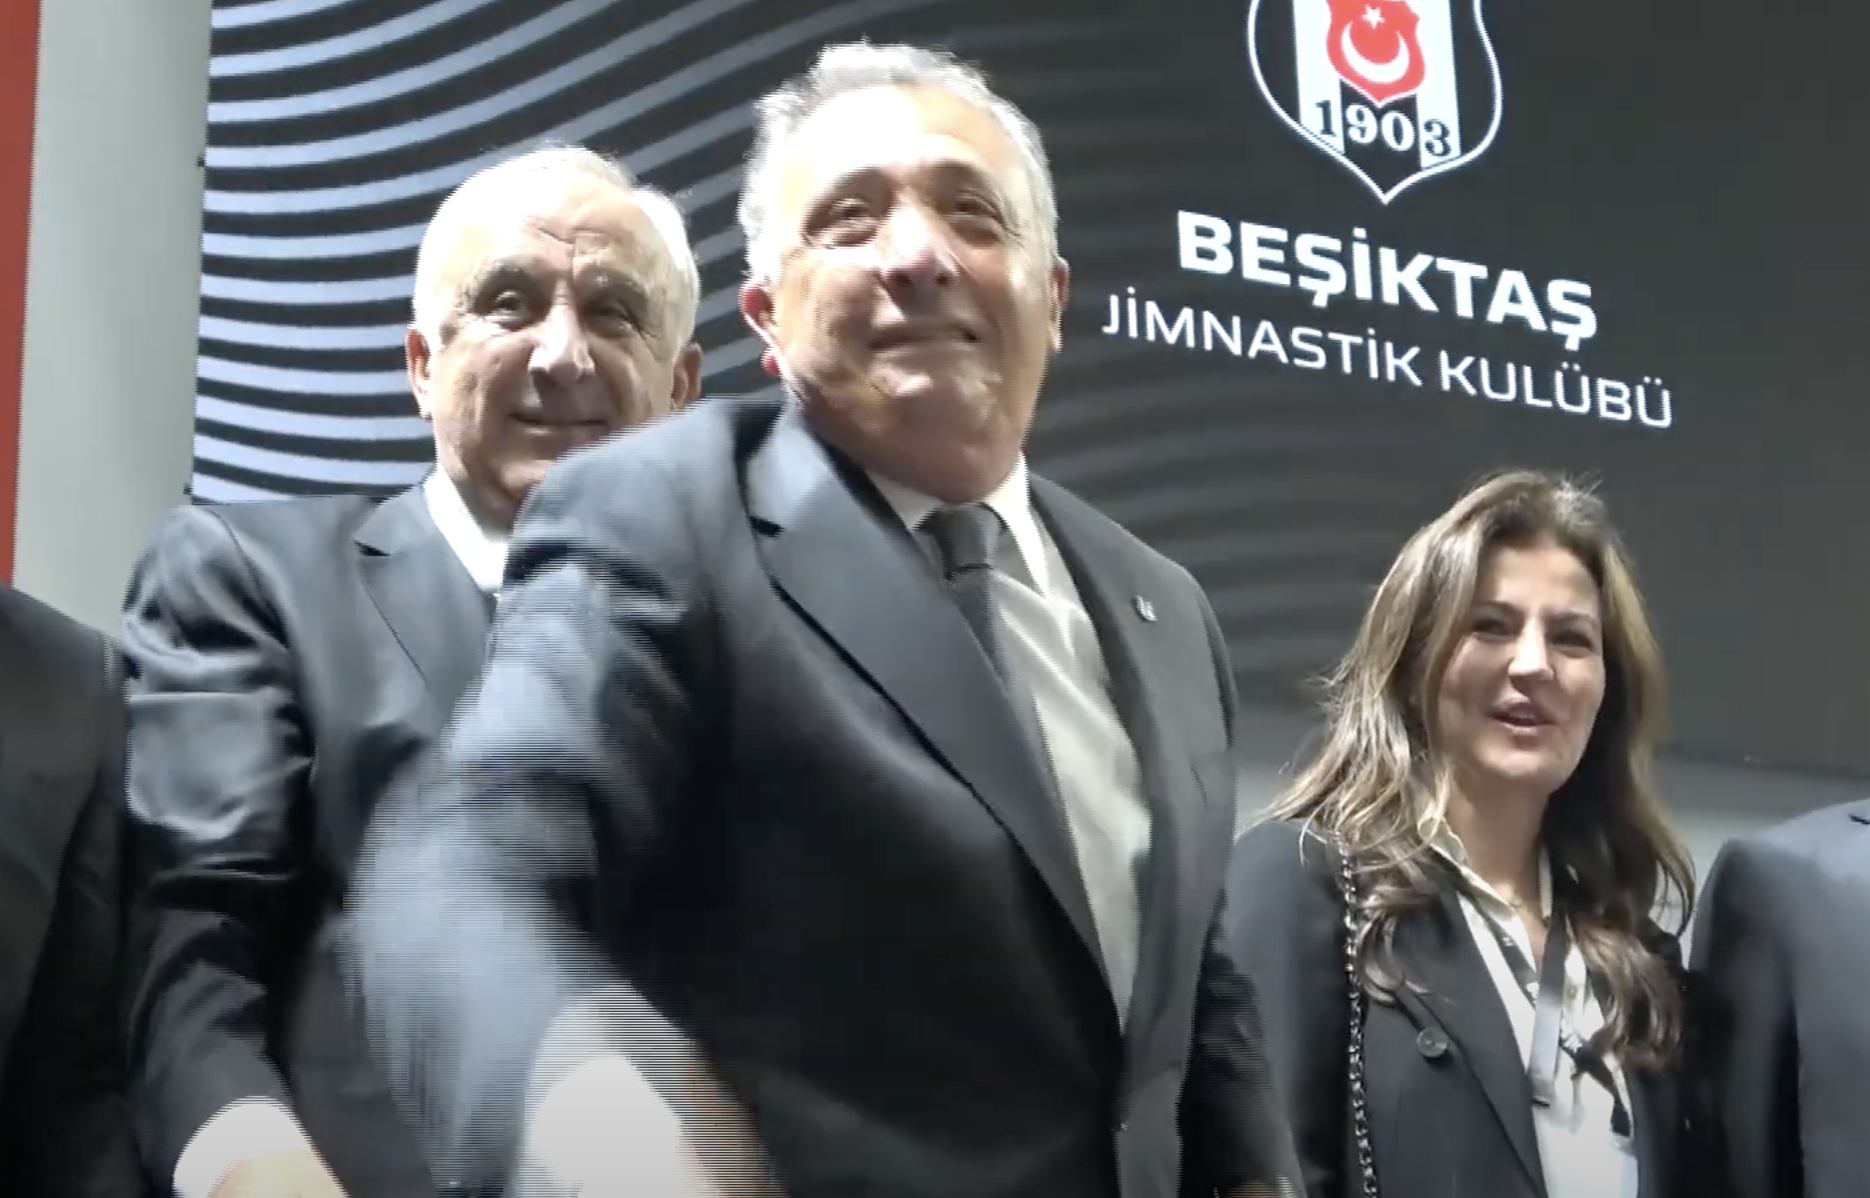 Ahmet Nur Çebi, 20 Ekim 2019'da düzenlenen olağanüstü seçimli genel kurulda yarıştığı Serdal Adalı ile Hürser Tekinoktay'a üstünlük kurarak Beşiktaş başkanlık koltuğuna oturdu.